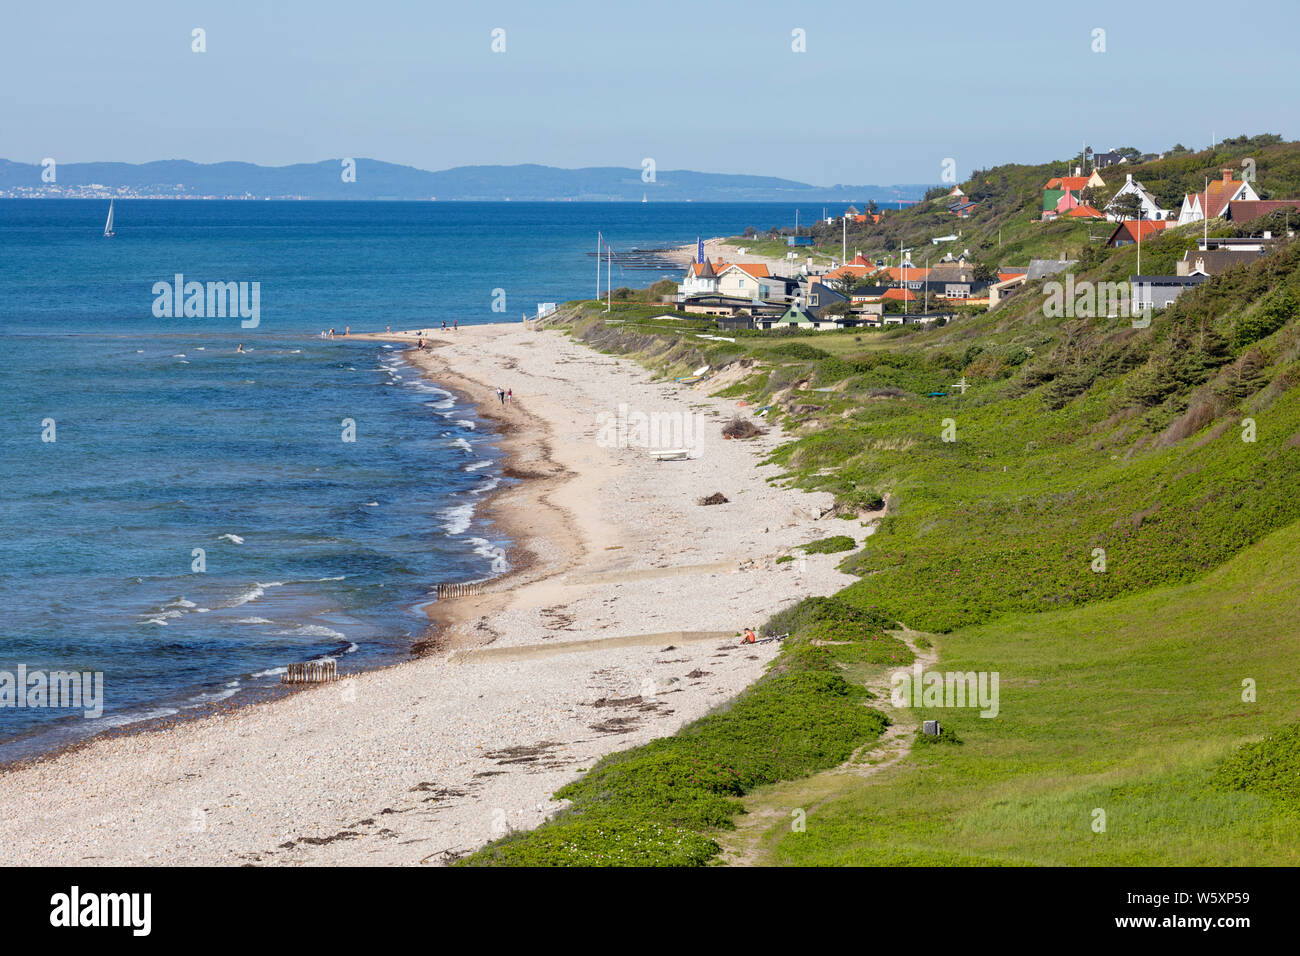 Blick auf Strand und Dorf mit dem schwedischen Festland Abstand, Rageleje, Region Hovedstaden, Neuseeland, Dänemark, Europa Stockfoto